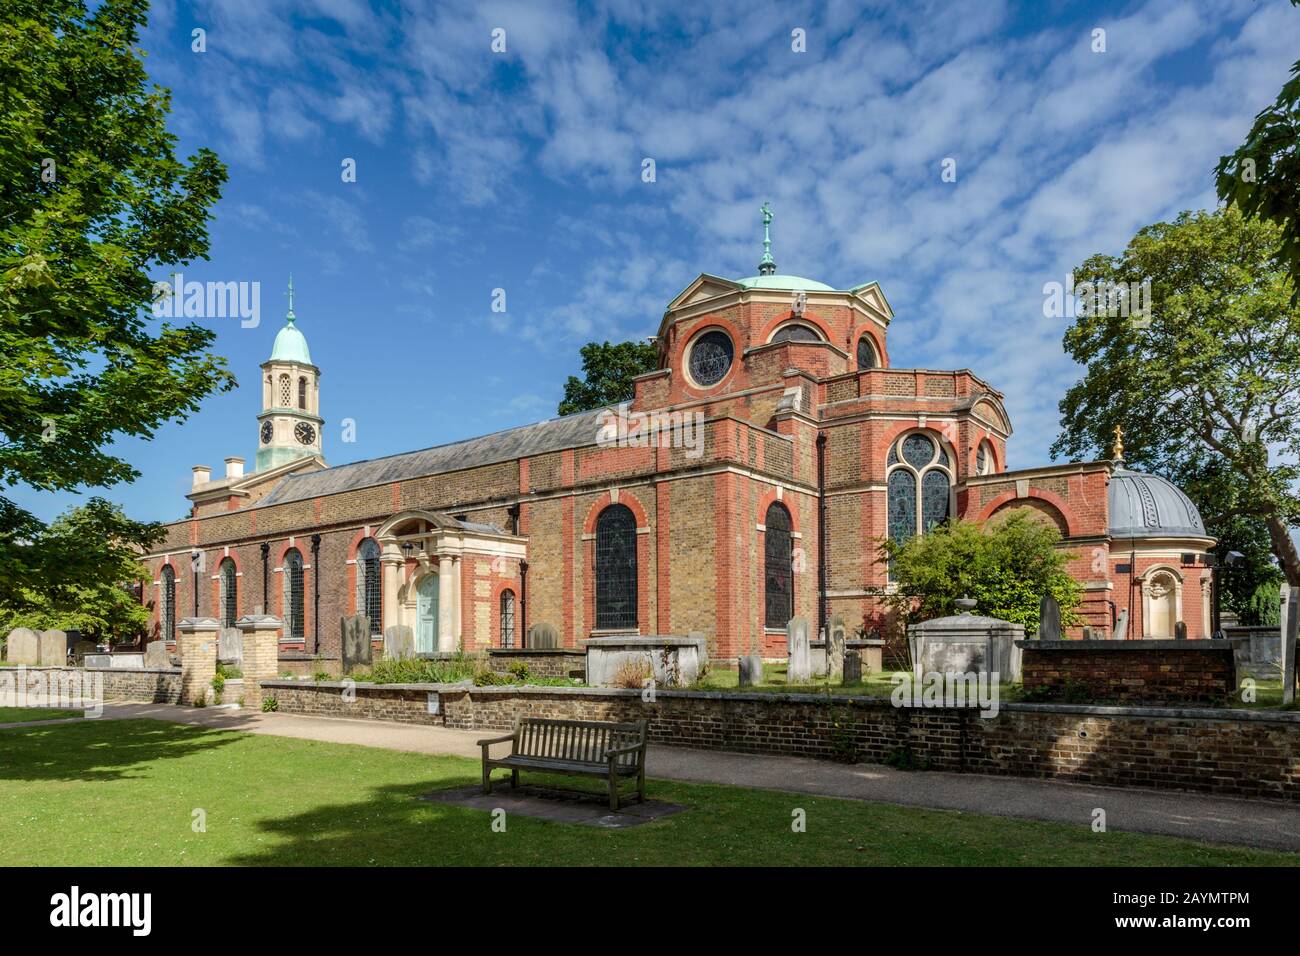 St Anne's Church es una iglesia parroquial en Kew, en el distrito londinense de Richmond upon Thames, en el oeste de Londres. Foto de stock